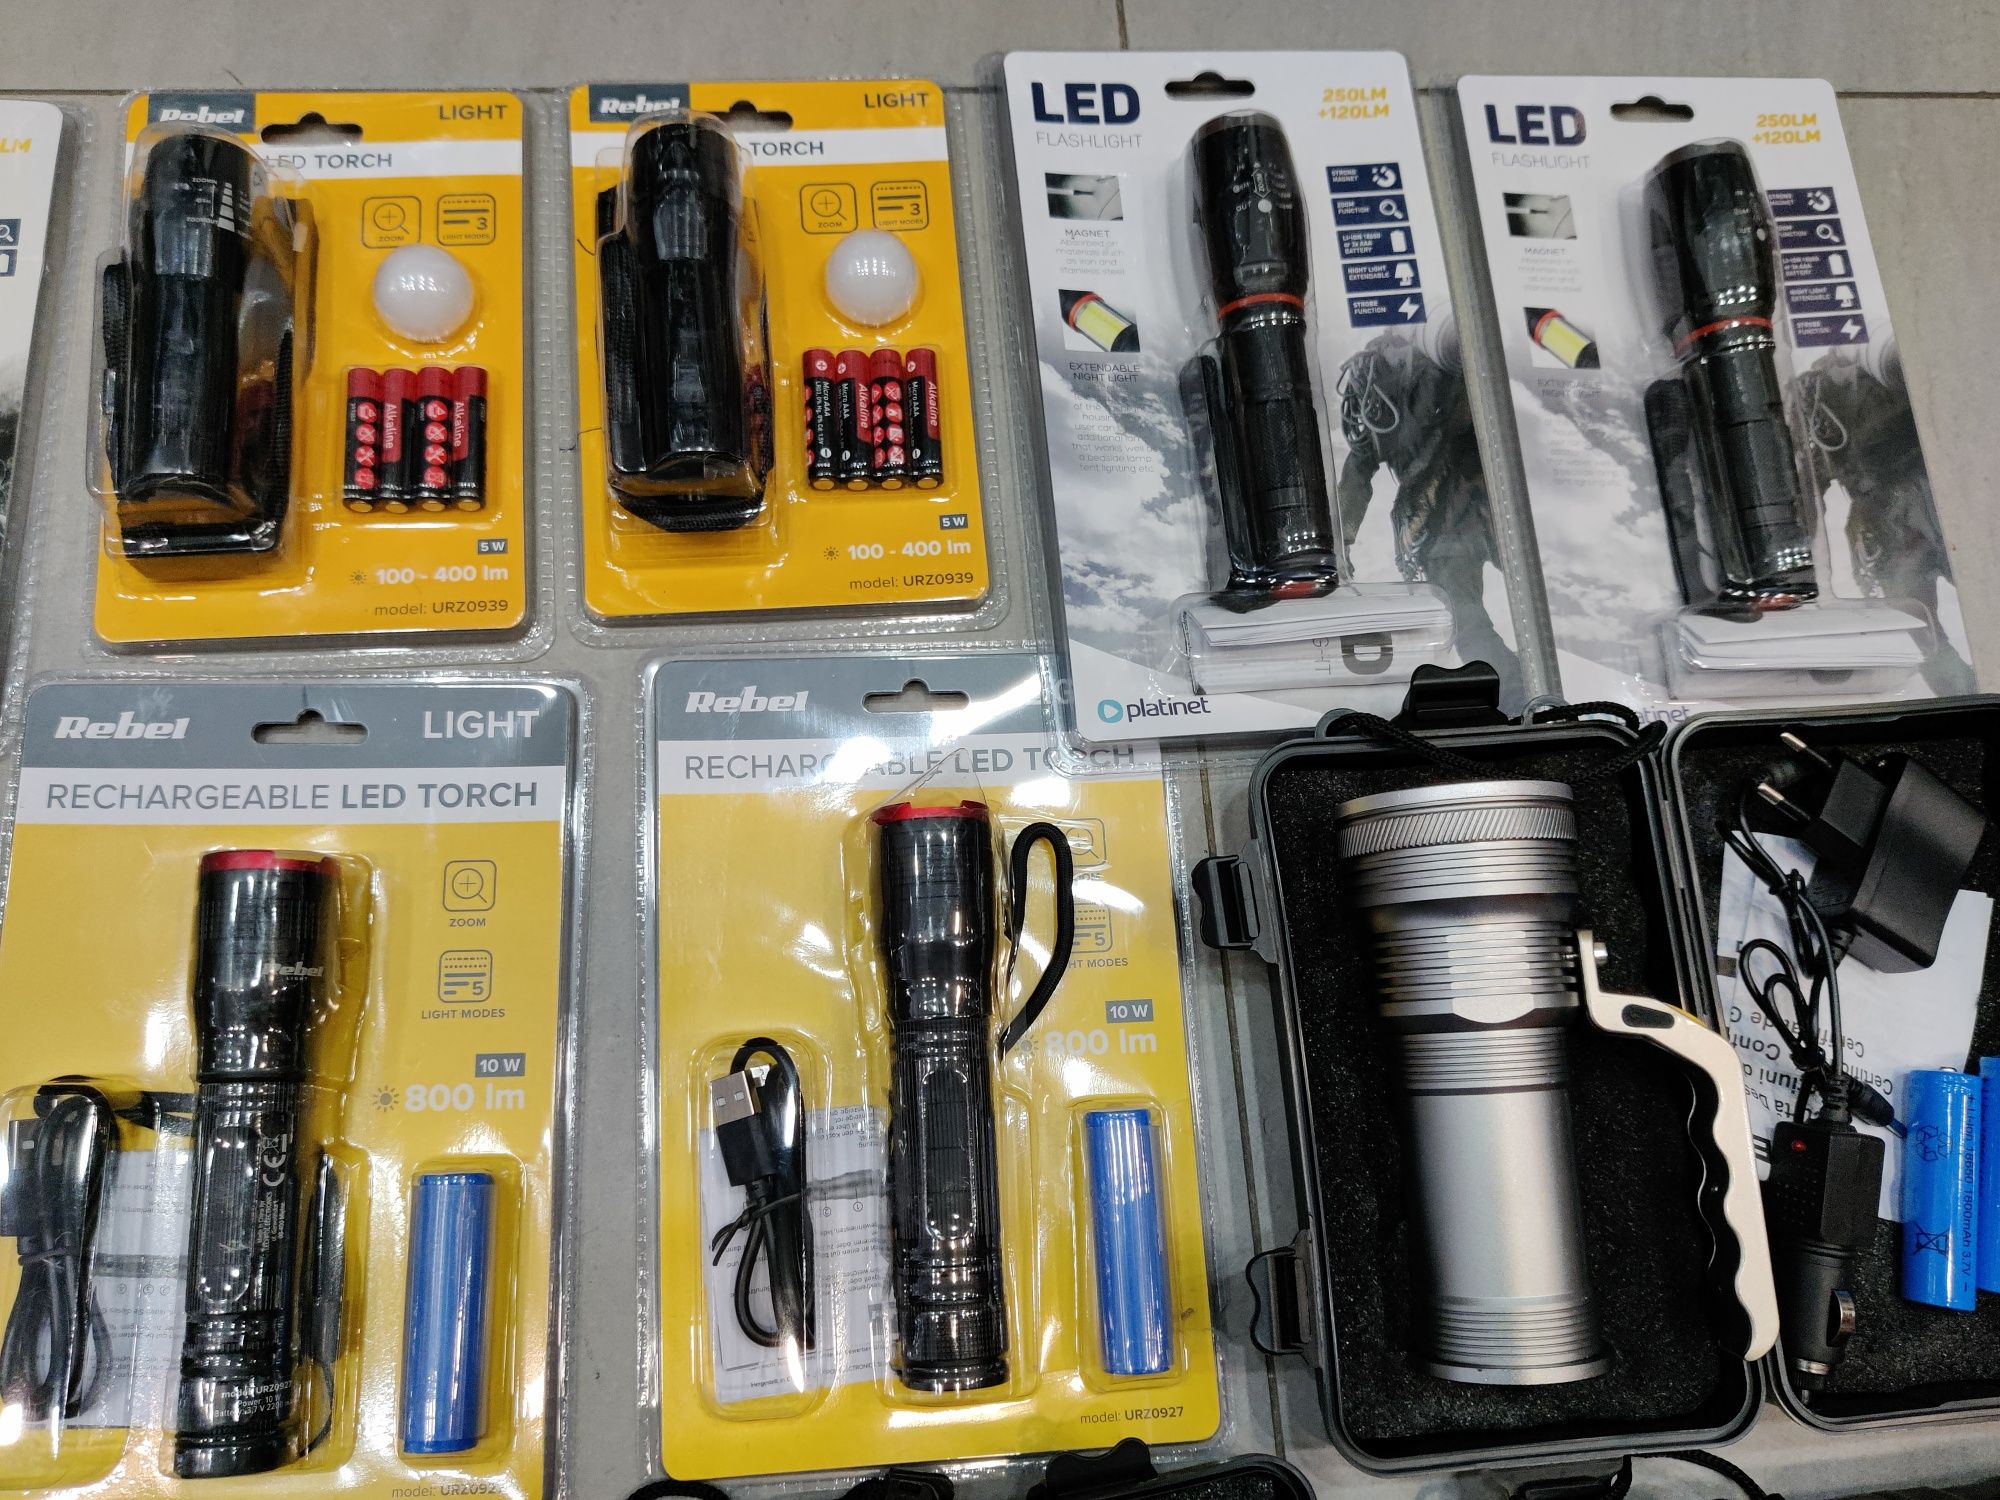 Lanterne LED SMD cu Acumulatori LITIU-ION, Putere 10W, 5W, 3W, Philips